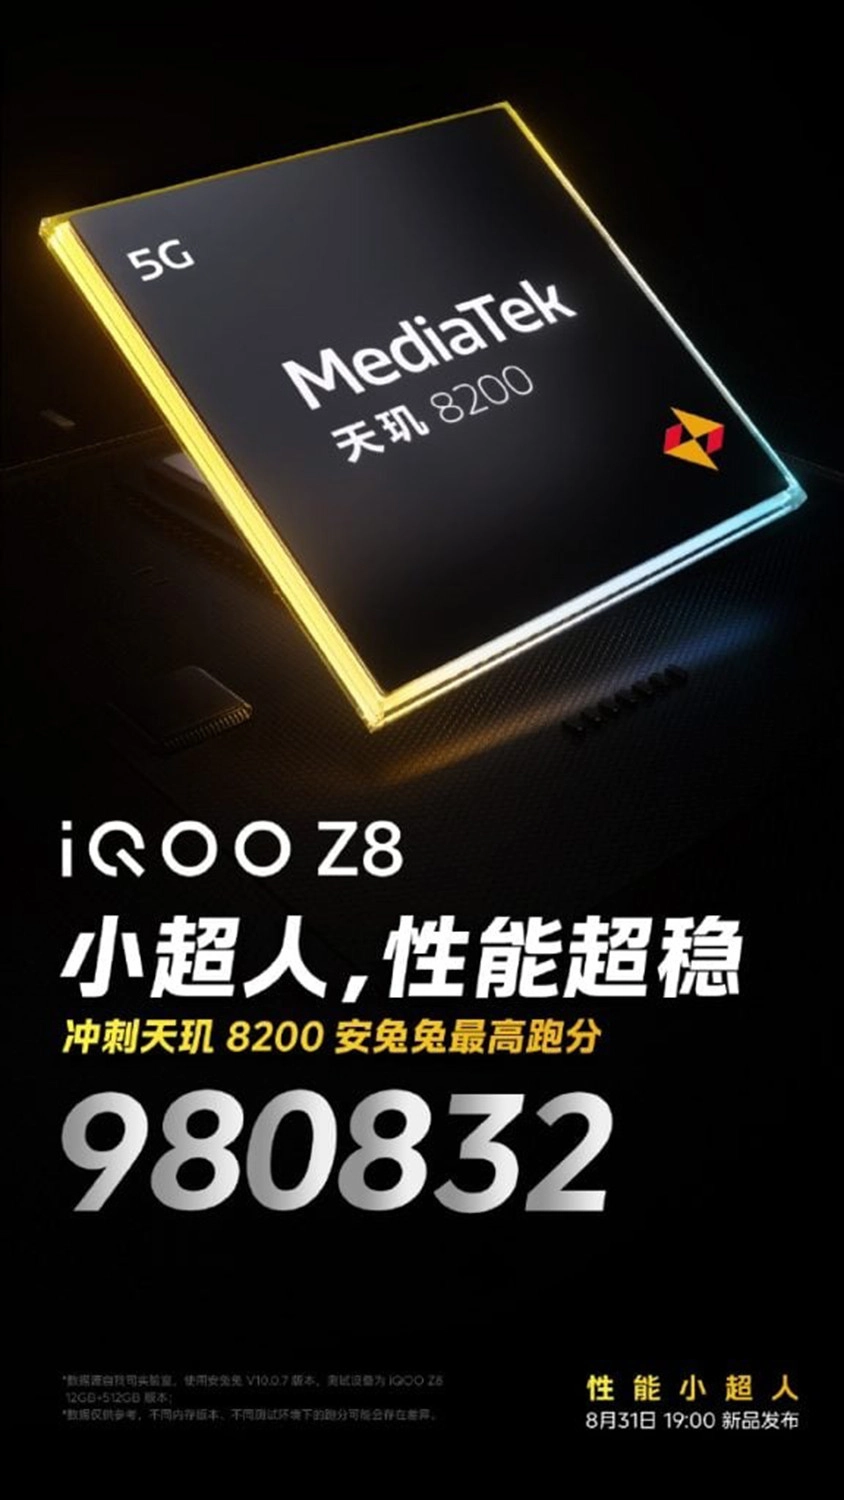 iqoo-z8-series-ra-mat-chip-dimensity-8200